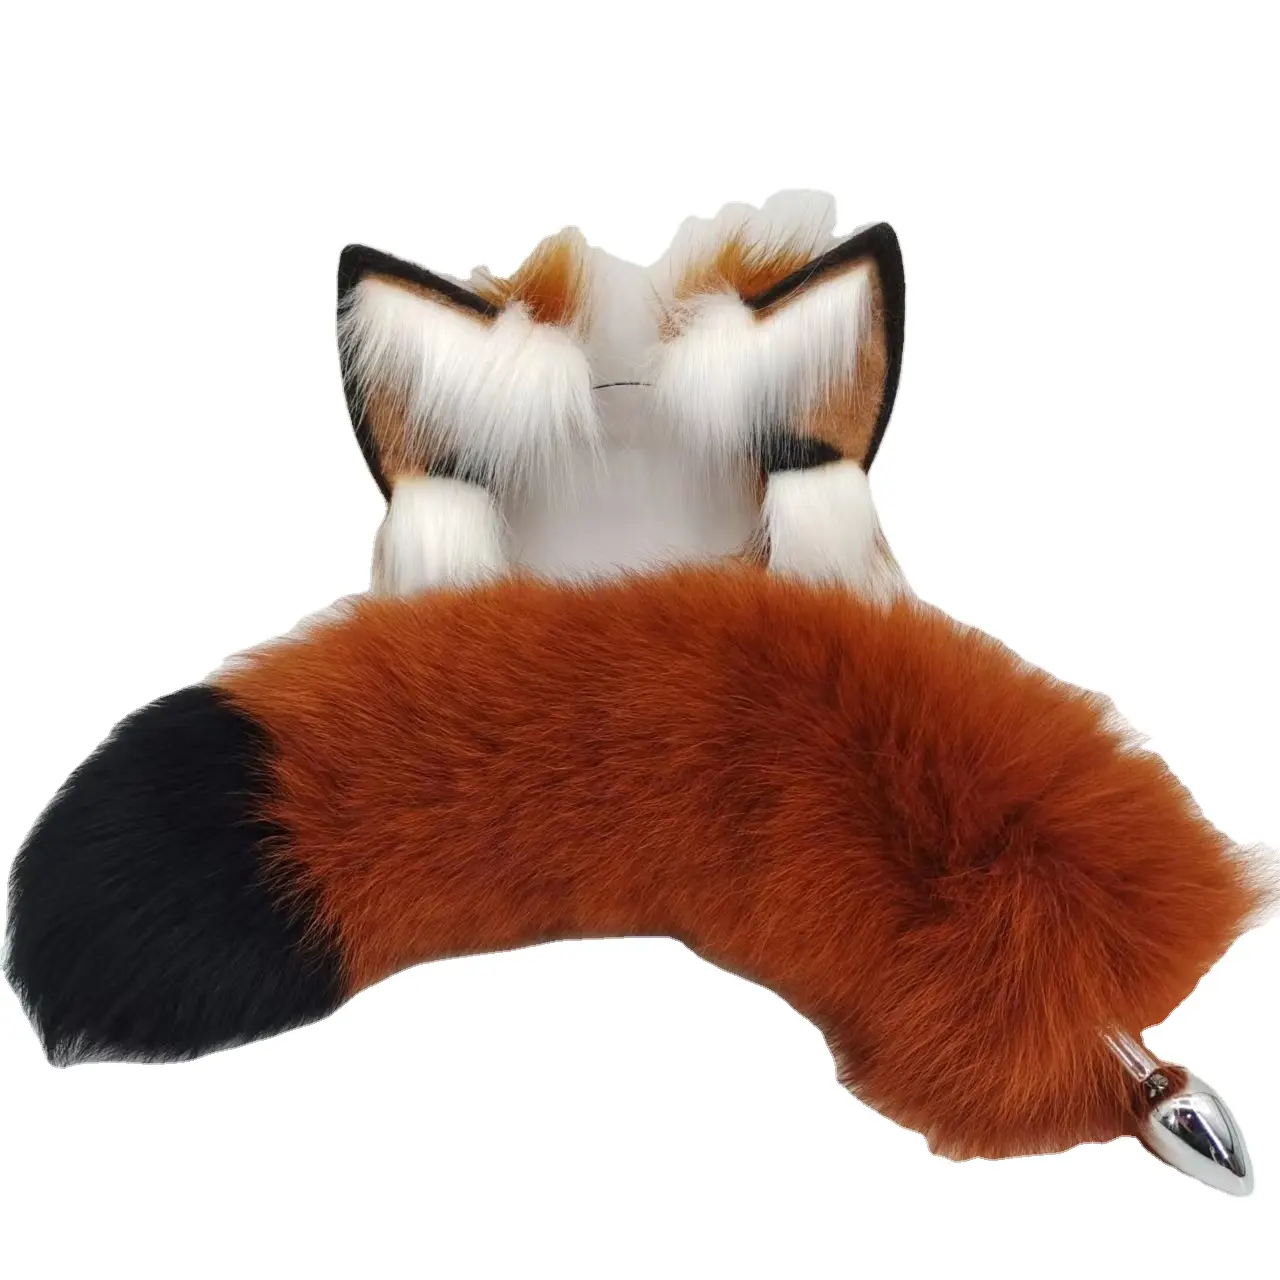 Preço baixoA Fox orelha e cauda terno raposa cauda anal plug vestido senhora gato orelha adulto papel playSex produtos